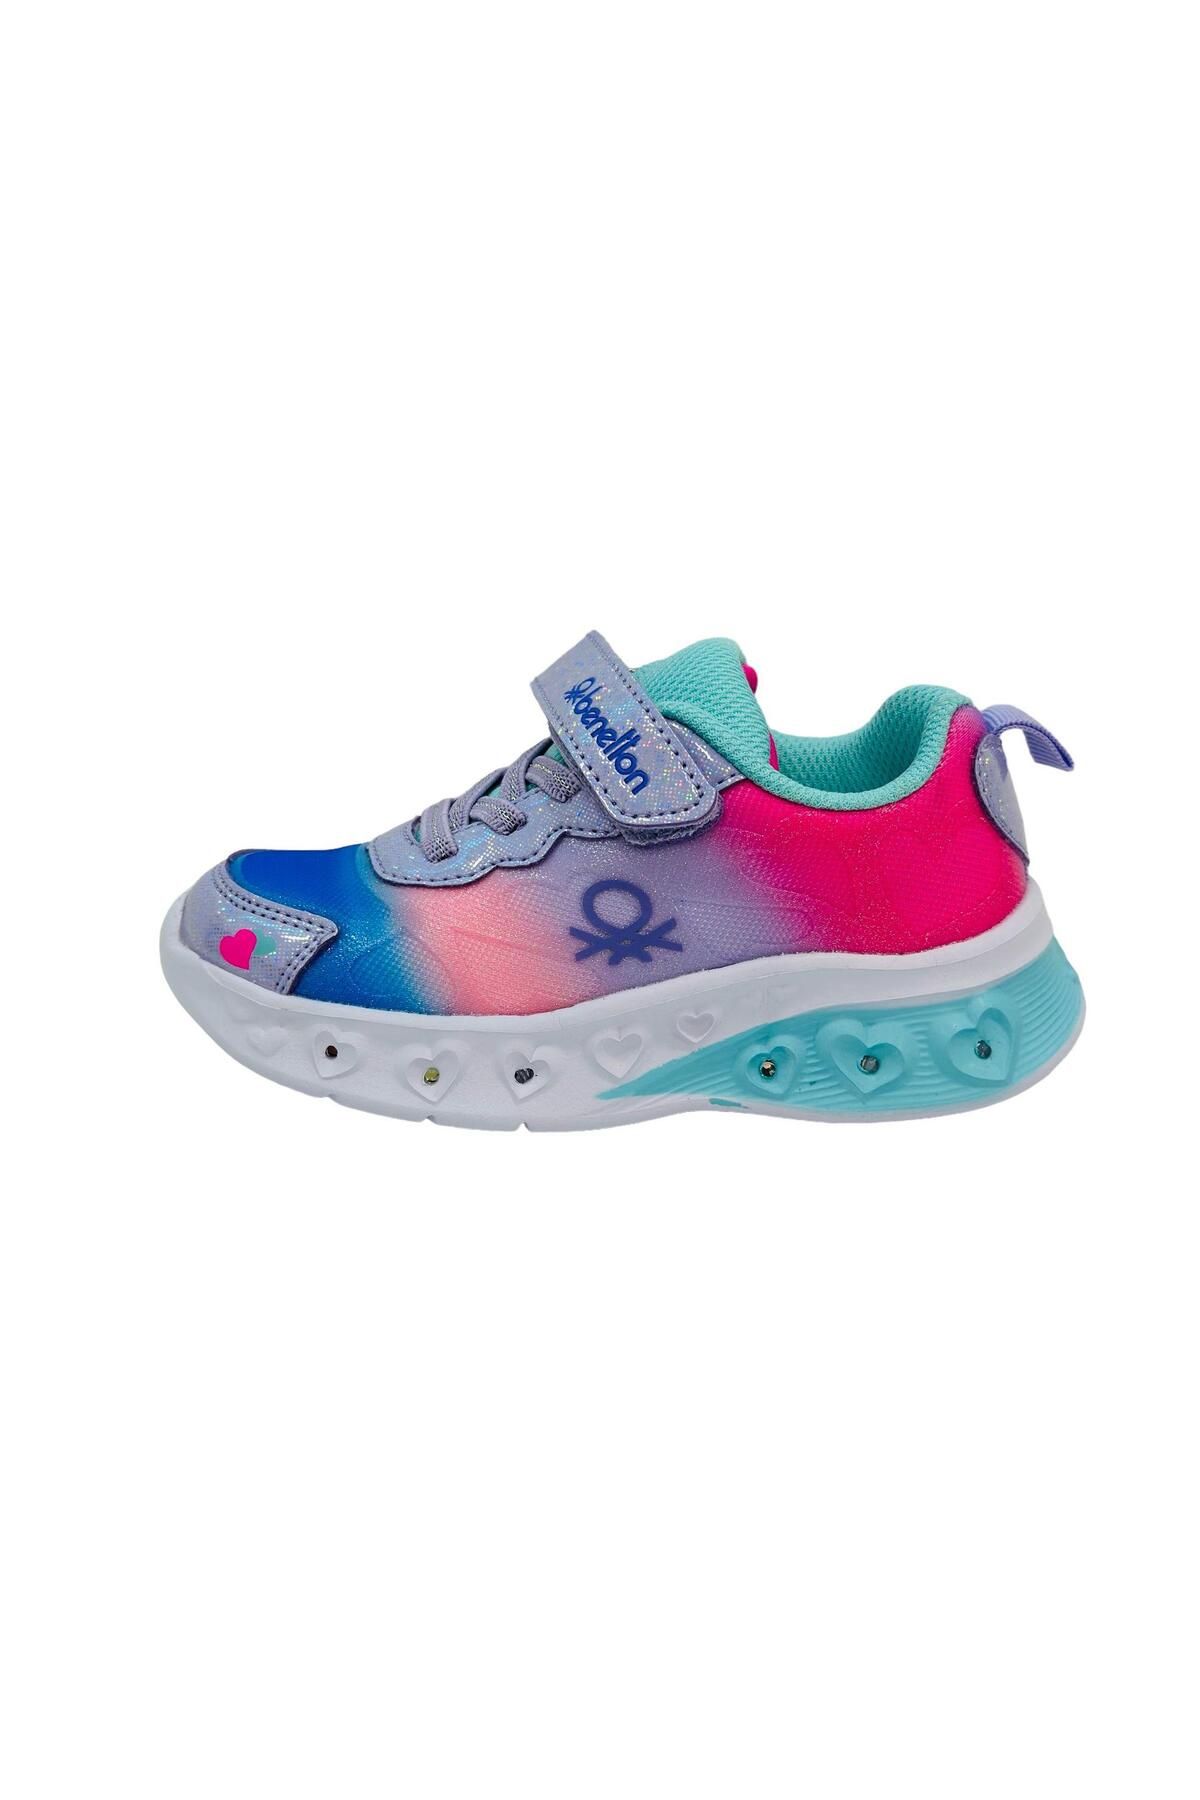 Benetton Işıklı Kız Çocuk Spor Ayakkabı Mavi Lila